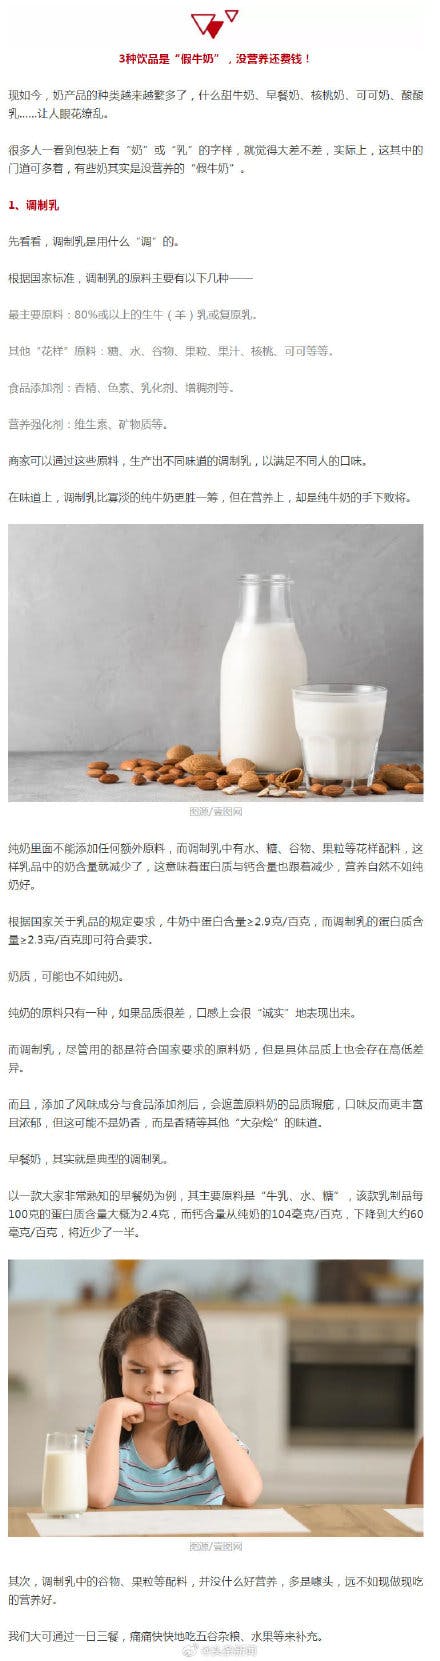 3种假牛奶已被列入黑名单